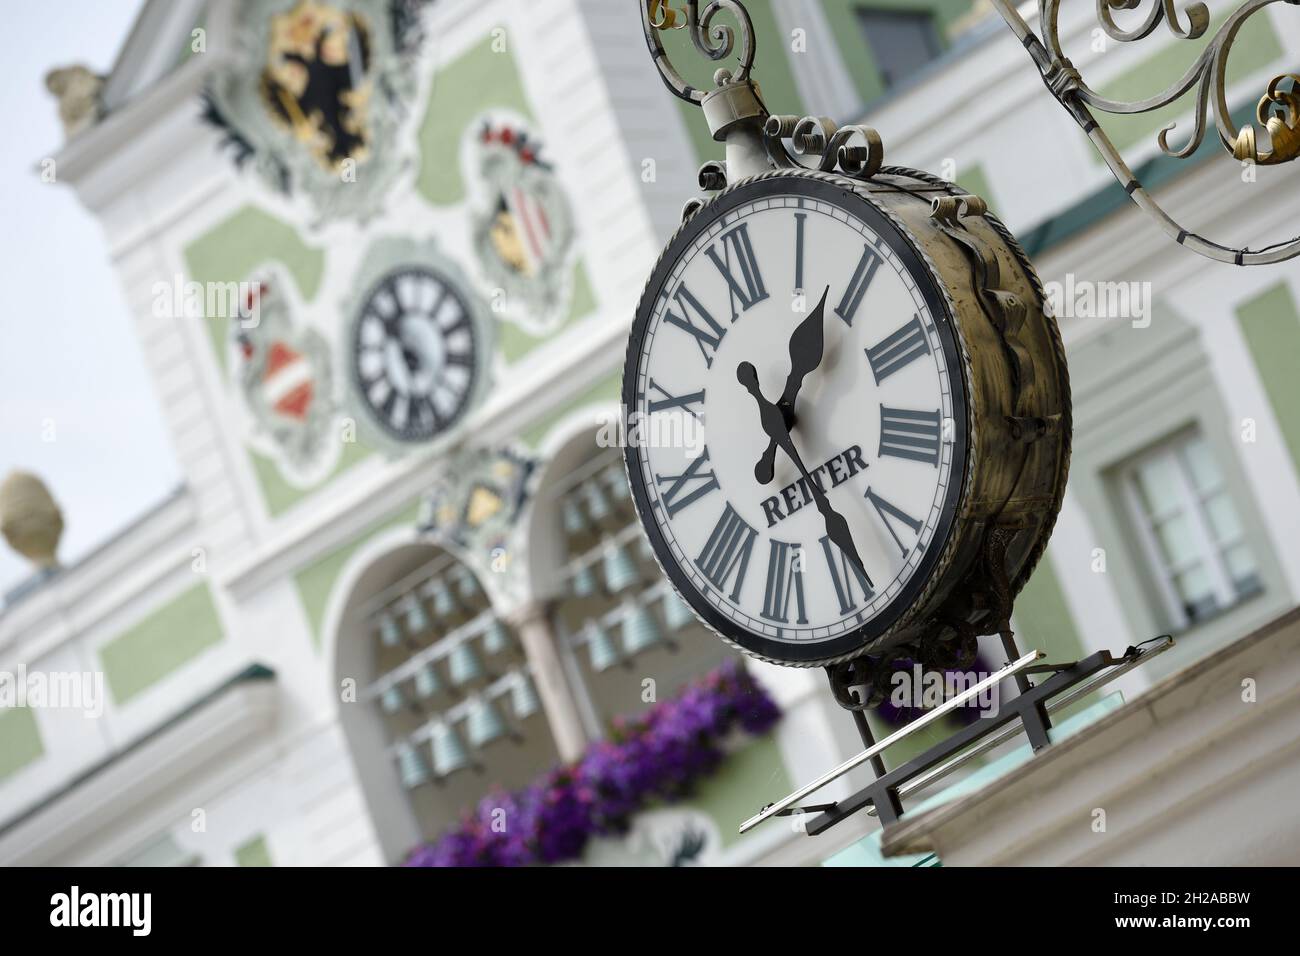 Historische Uhr in Gmunden, dahinter die Uhr des Rathauses (Bezirk Gmunden,  Oberösterreich, Österreich) - beide Uhren zeigen eine andere Zeit an. Hist  Stock Photo - Alamy